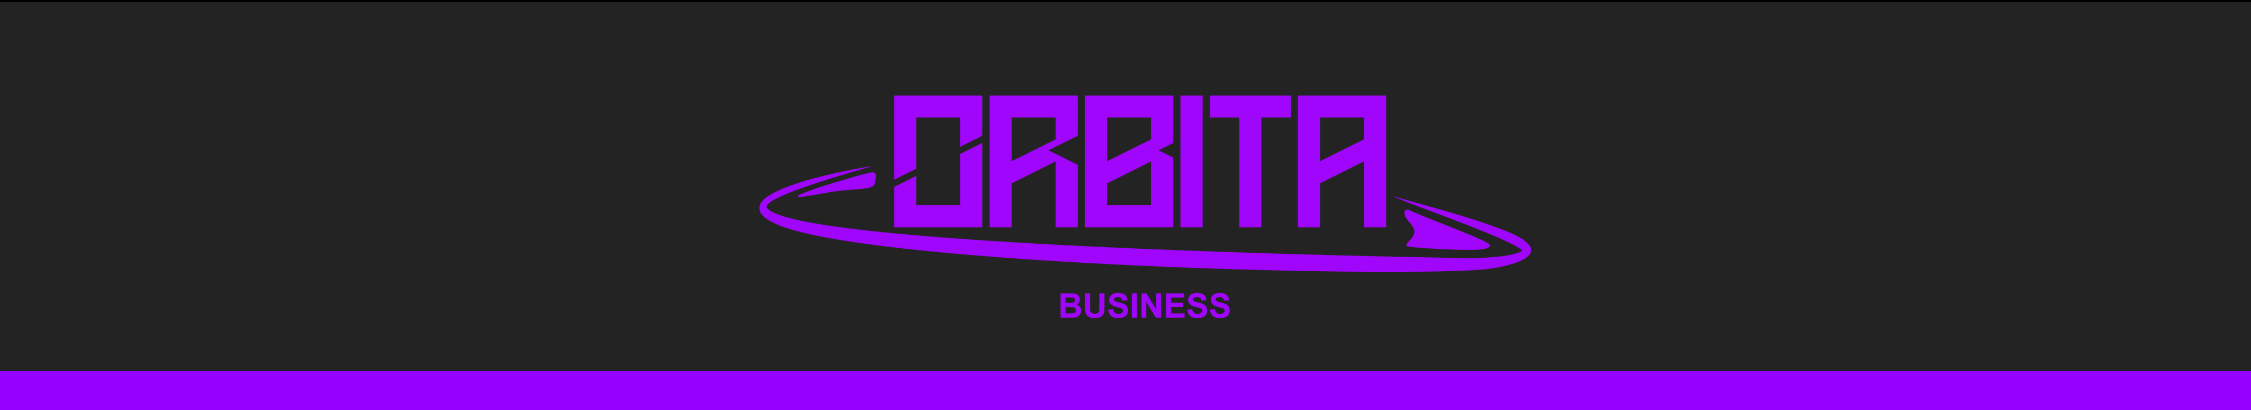 Orbita Business profil başlığı